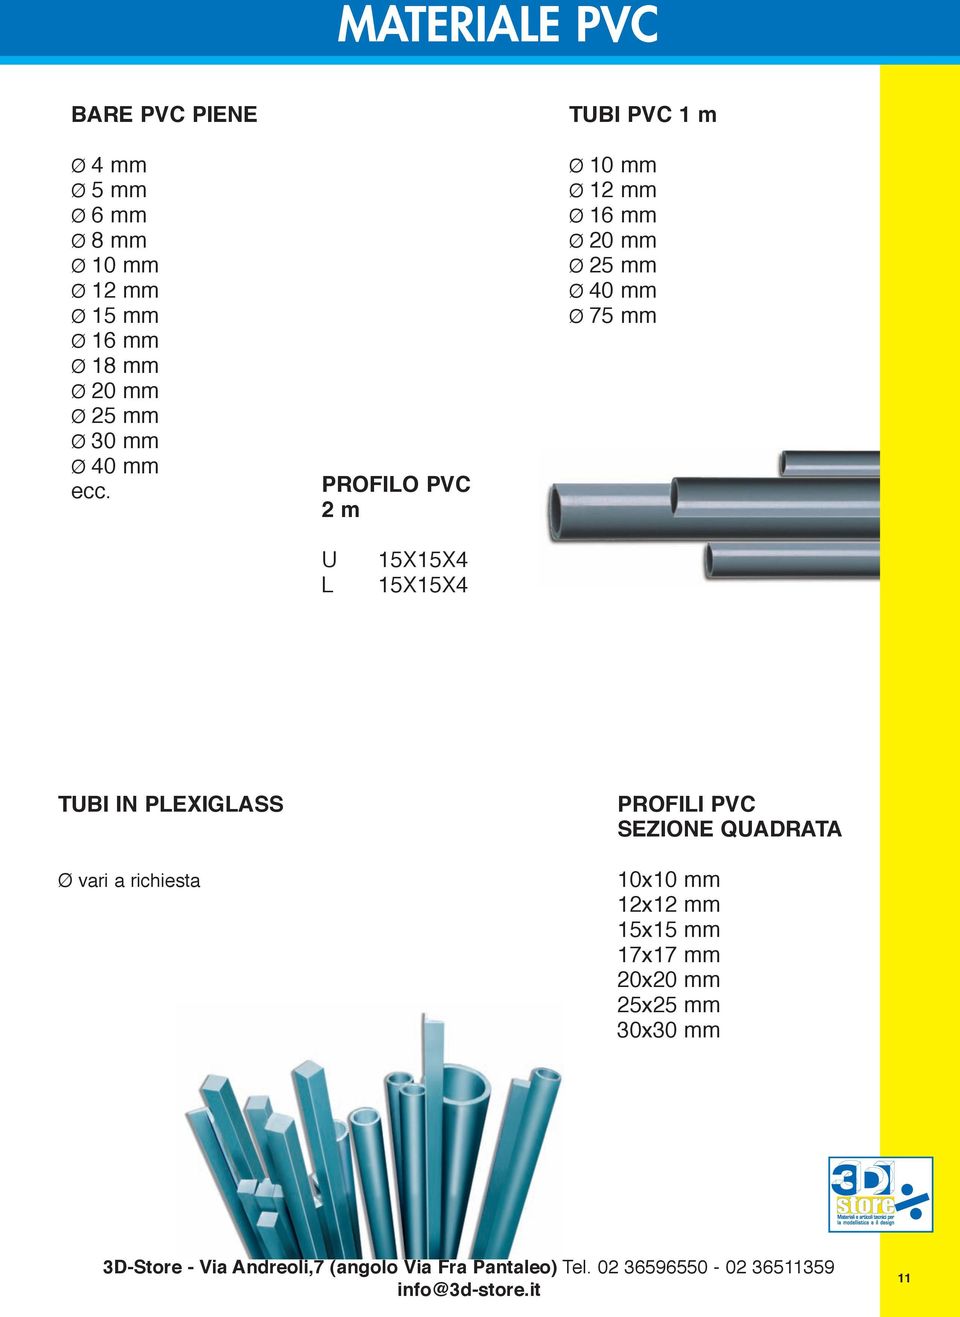 PROFILO PVC 2 m TUBI PVC 1 m Ø 10 mm Ø 1 Ø 16 mm Ø 20 mm Ø 25 mm Ø 40 mm Ø 75 mm U L